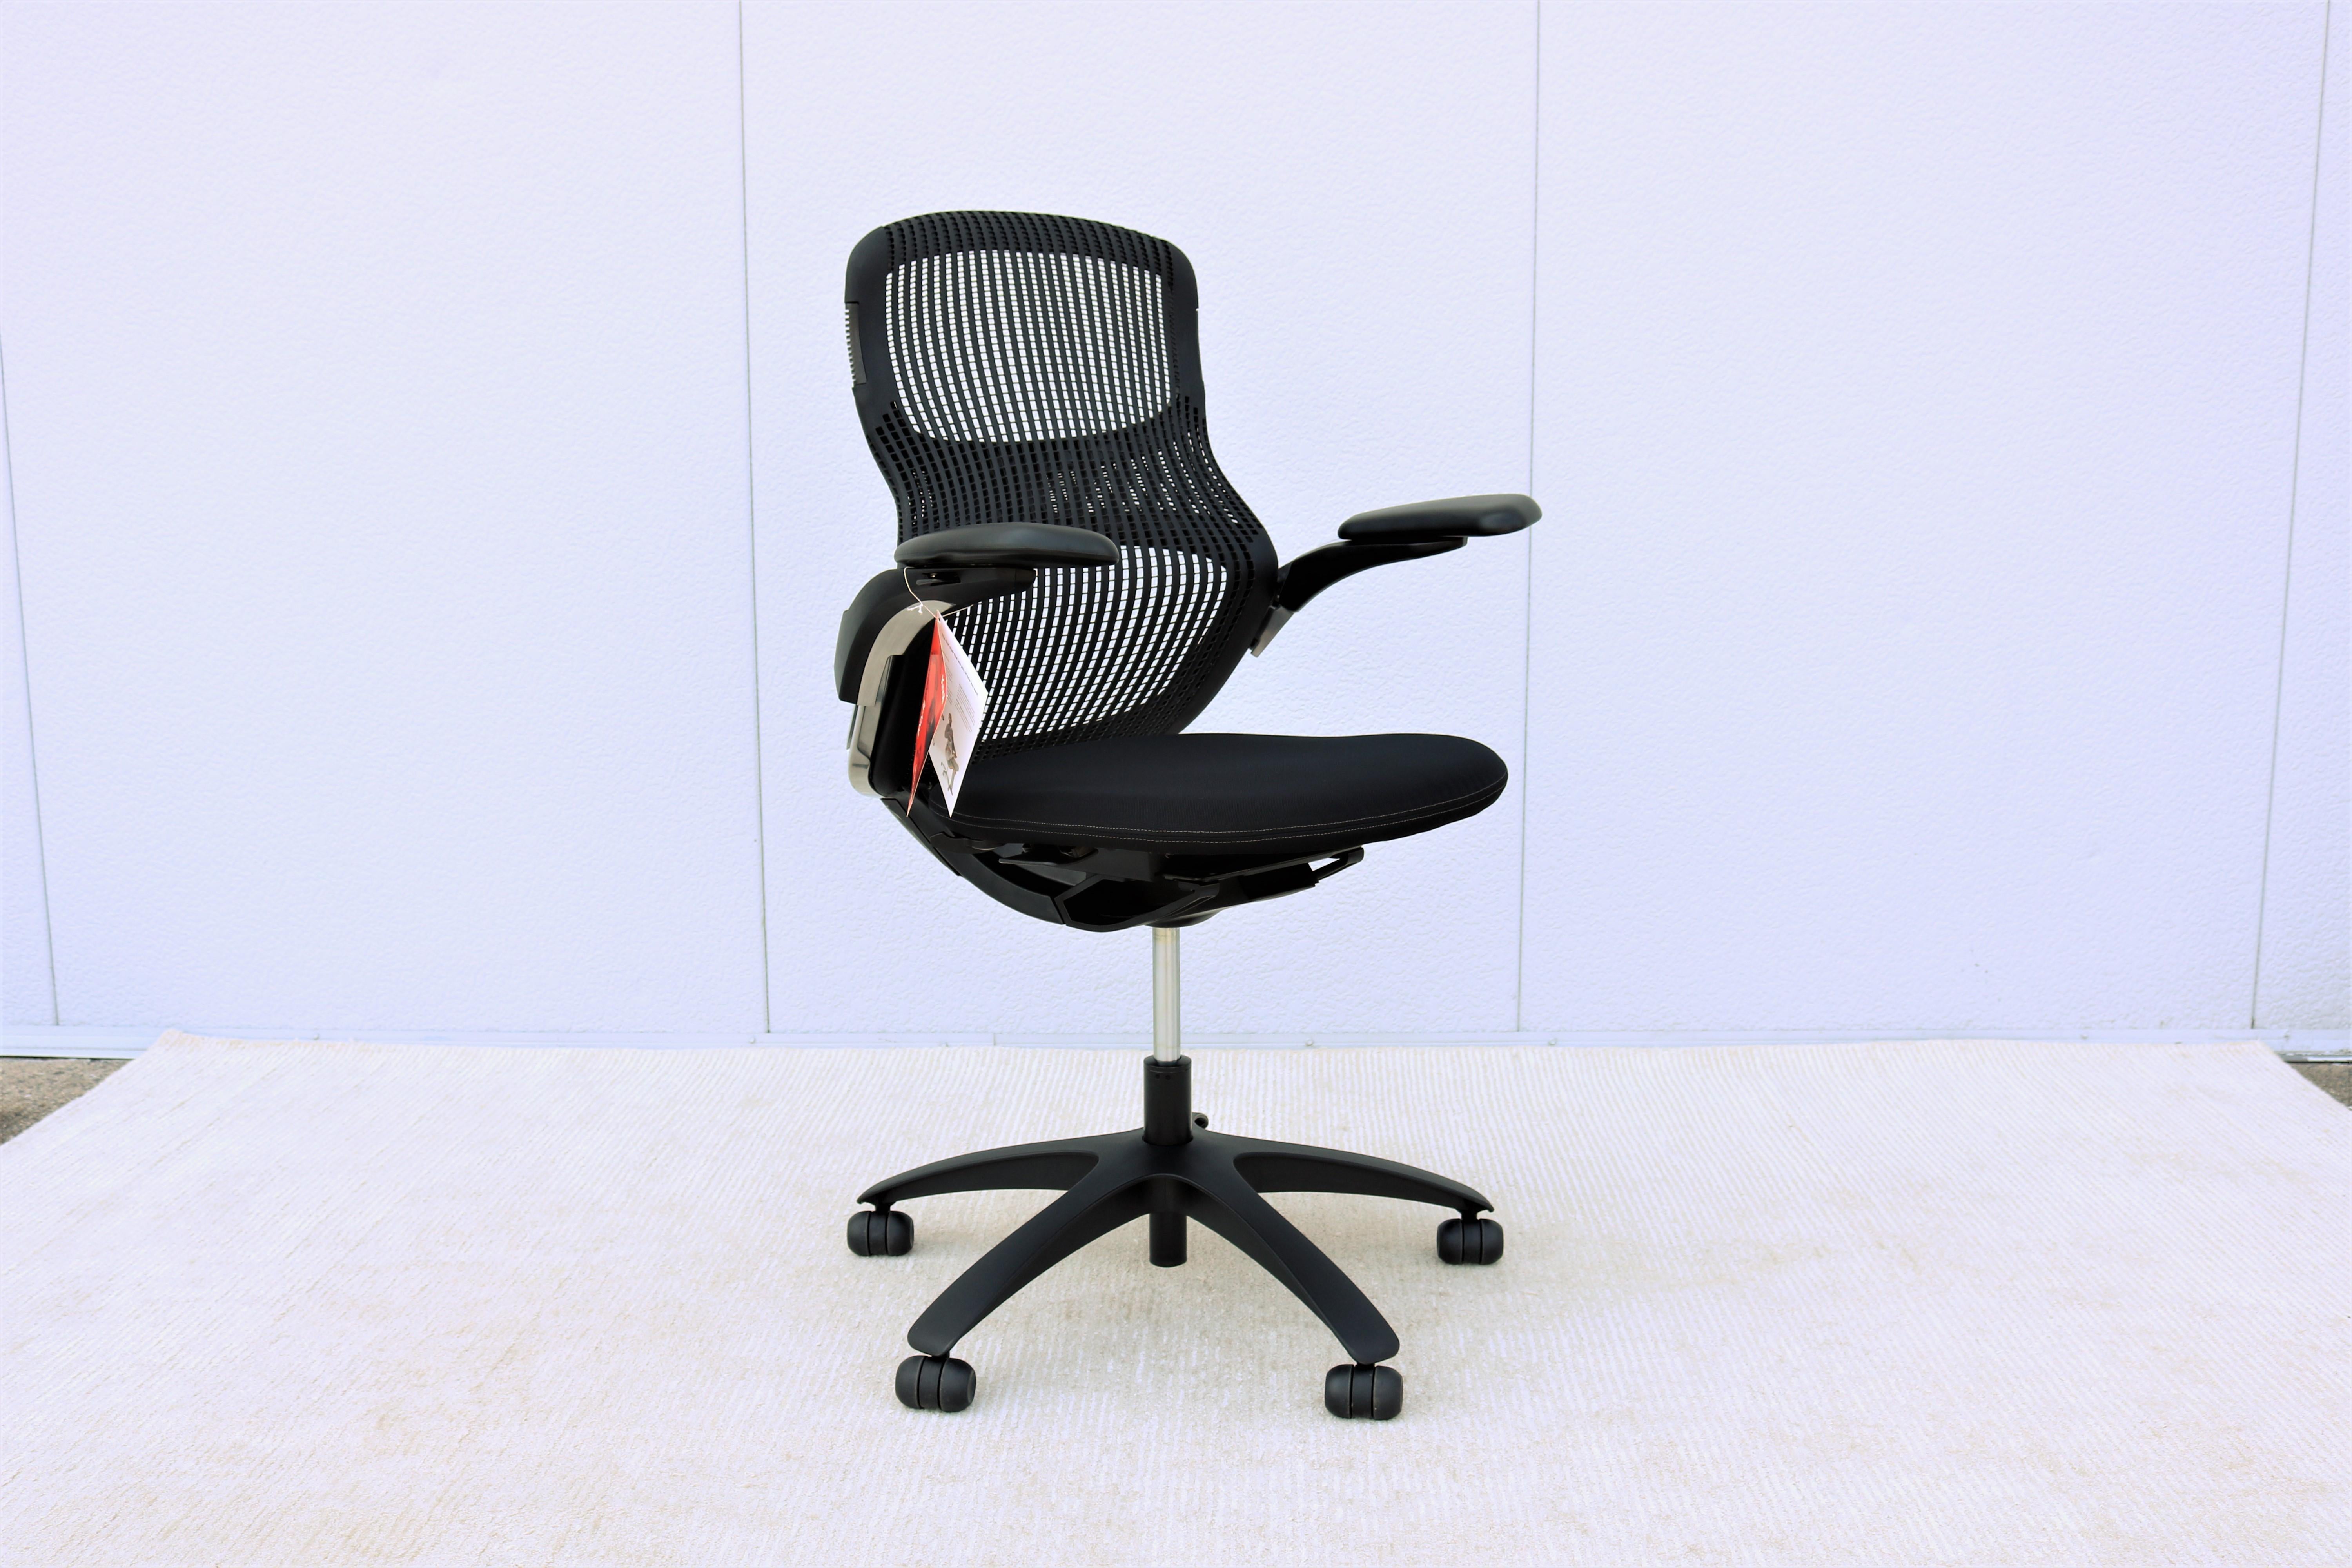 Chaise de bureau ergonomique noire Knoll Generation entièrement réglable, neuve.
Generation by Knoll est un siège de bureau primé qui offre un nouveau standard de confort et de liberté de mouvement à quiconque s'y assoit, vous permettant de vous